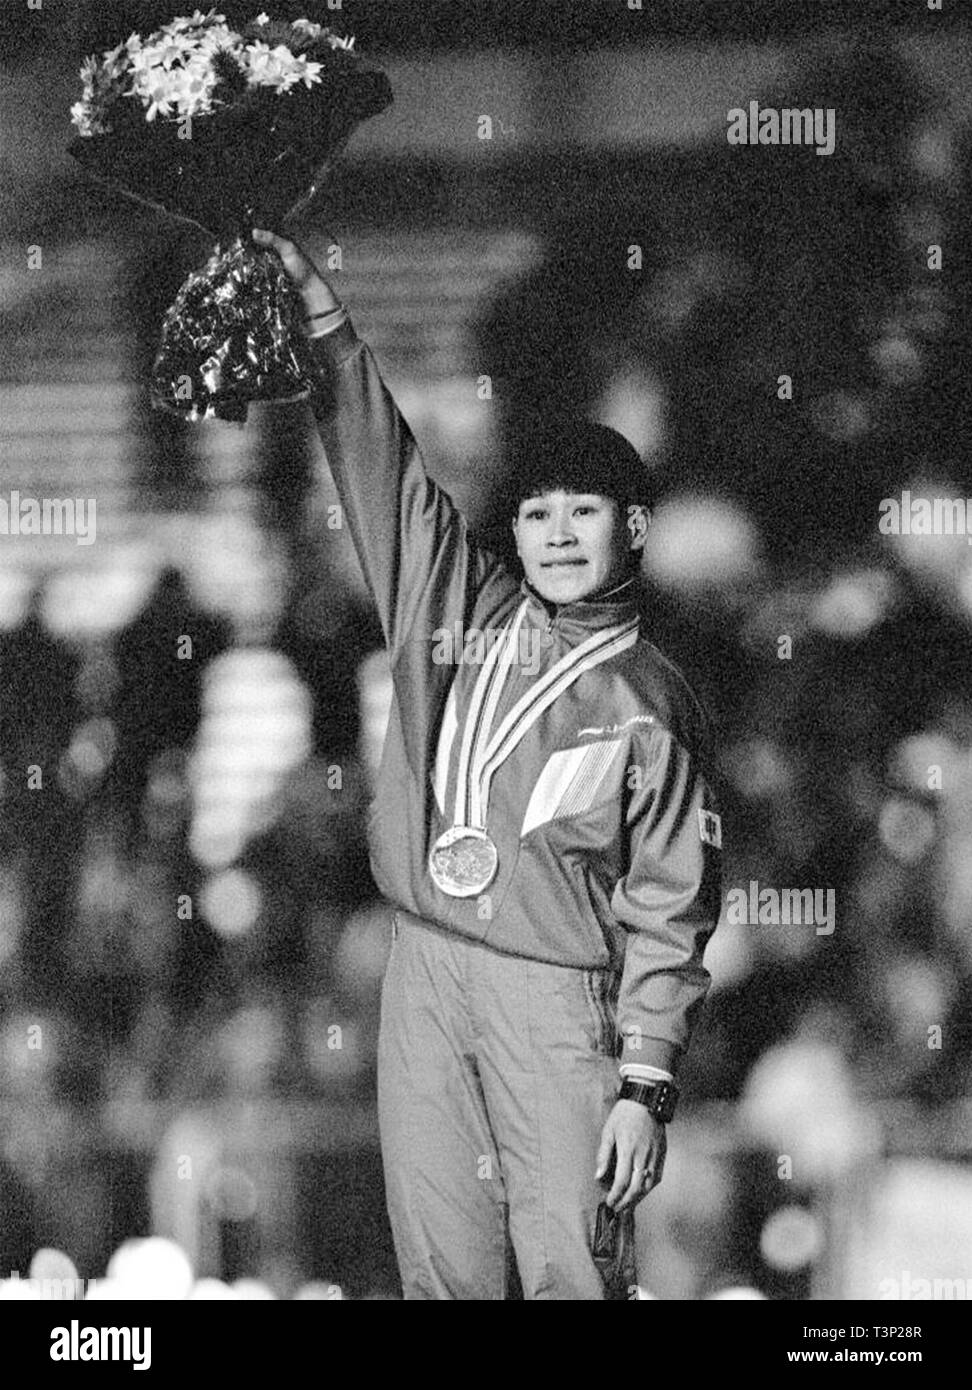 (190411) -- BEIJING, 11 de abril de 2019 (Xinhua) -- Foto de archivo tomada el 10 de febrero de 1992 muestra el segundo clasificado Ye Qiaobo celebrando en el podio durante la ceremonia de entrega de la mujer en 500m de patinaje de velocidad el evento en el 1992 Juegos Olímpicos de Invierno de Albertville. Era China la primera medalla olímpica de invierno. Enviar atletas para los Juegos Olímpicos de Verano de Helsinki por primera vez en 1952 al ganar la candidatura para albergar los Juegos Olímpicos de Invierno de 2022 en 2015, la República Popular de China pasó a través de una notable historia de deportes, incluyendo nuestro éxito en la celebración de los Juegos Olímpicos de Verano de 2008 y preparar para Foto de stock